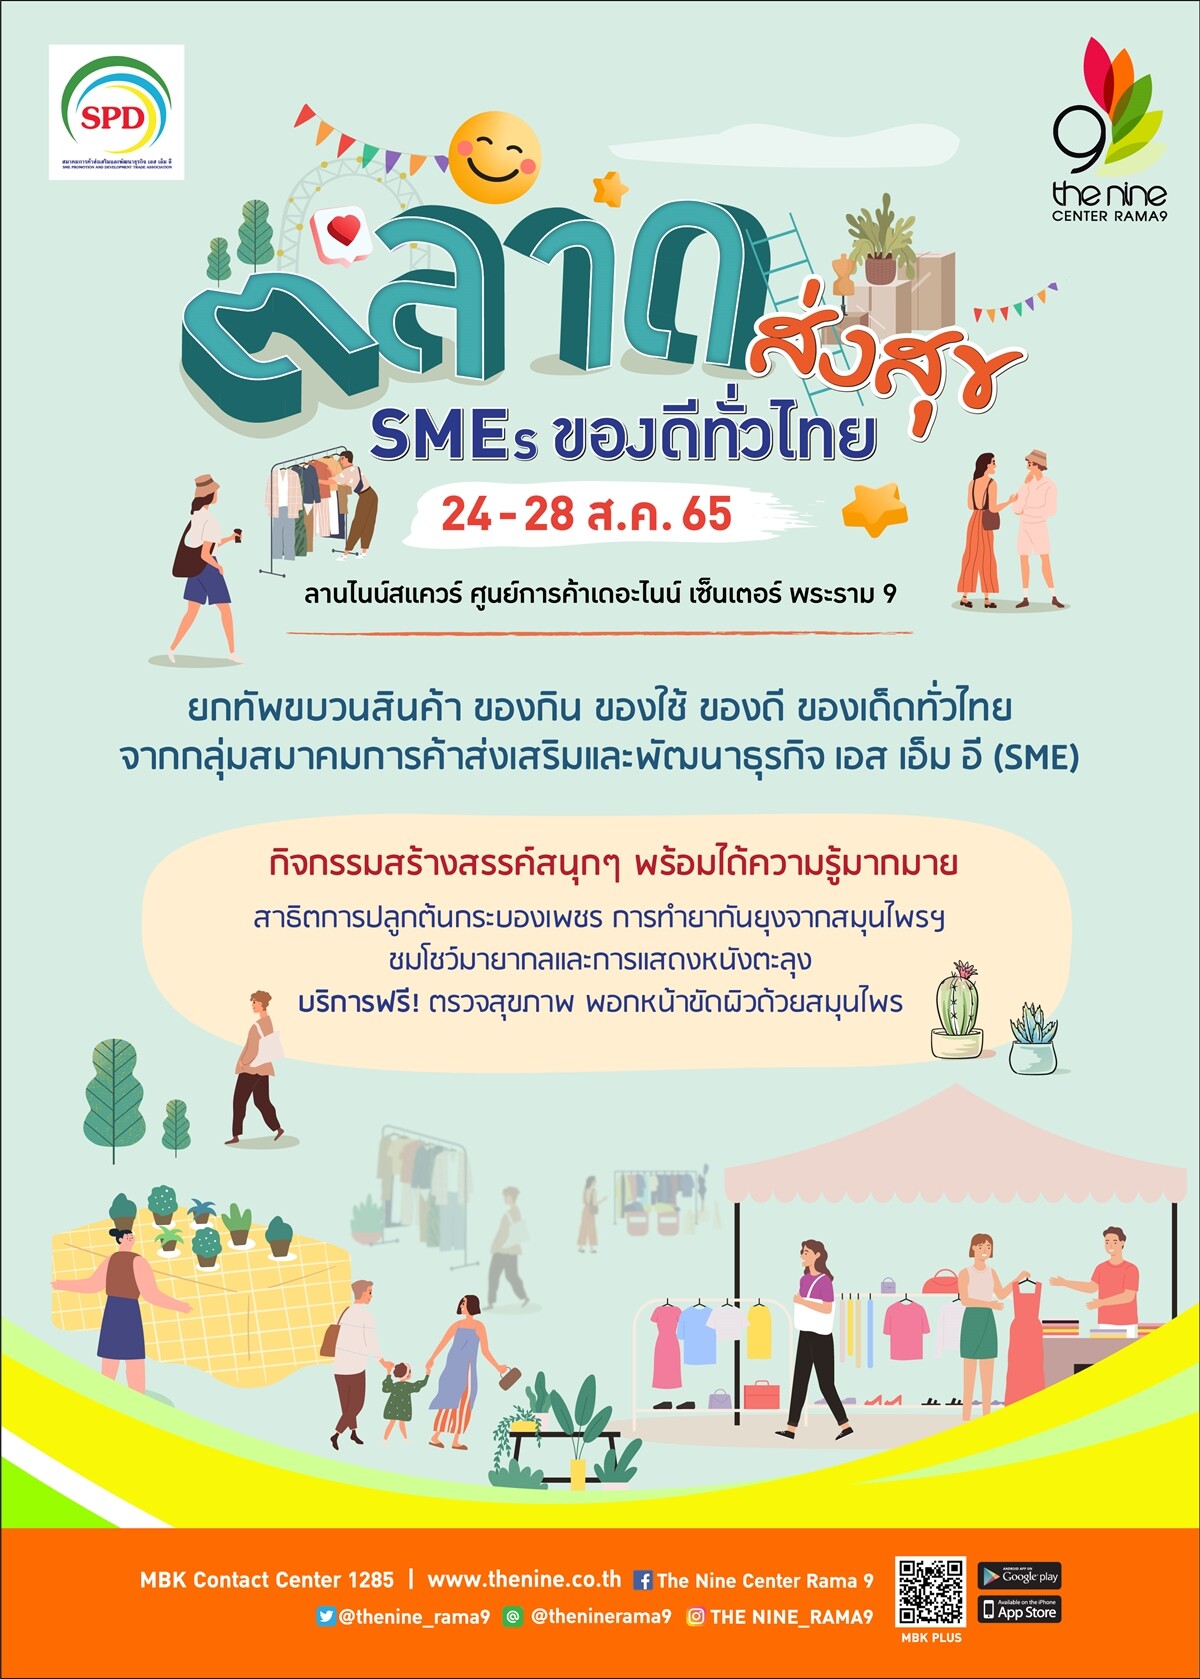 เดอะไนน์ เซ็นเตอร์ พระราม 9 พาช้อปสนุกในงาน "ตลาดส่งสุข SMEs ของดีทั่วไทย"